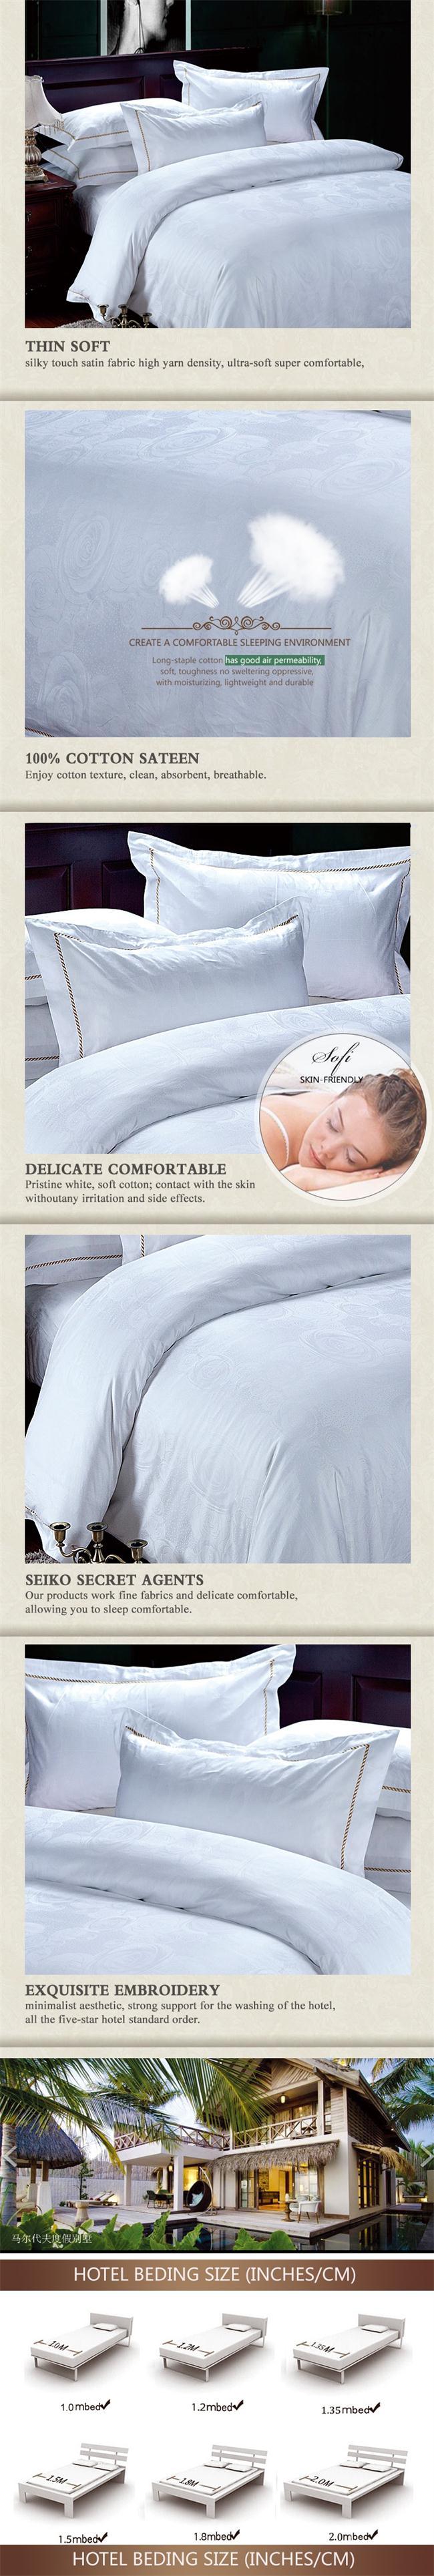 4 PCS Wholesale Luxury Jacquard Weave Cotton Bed Sheet Set Bedding Sets